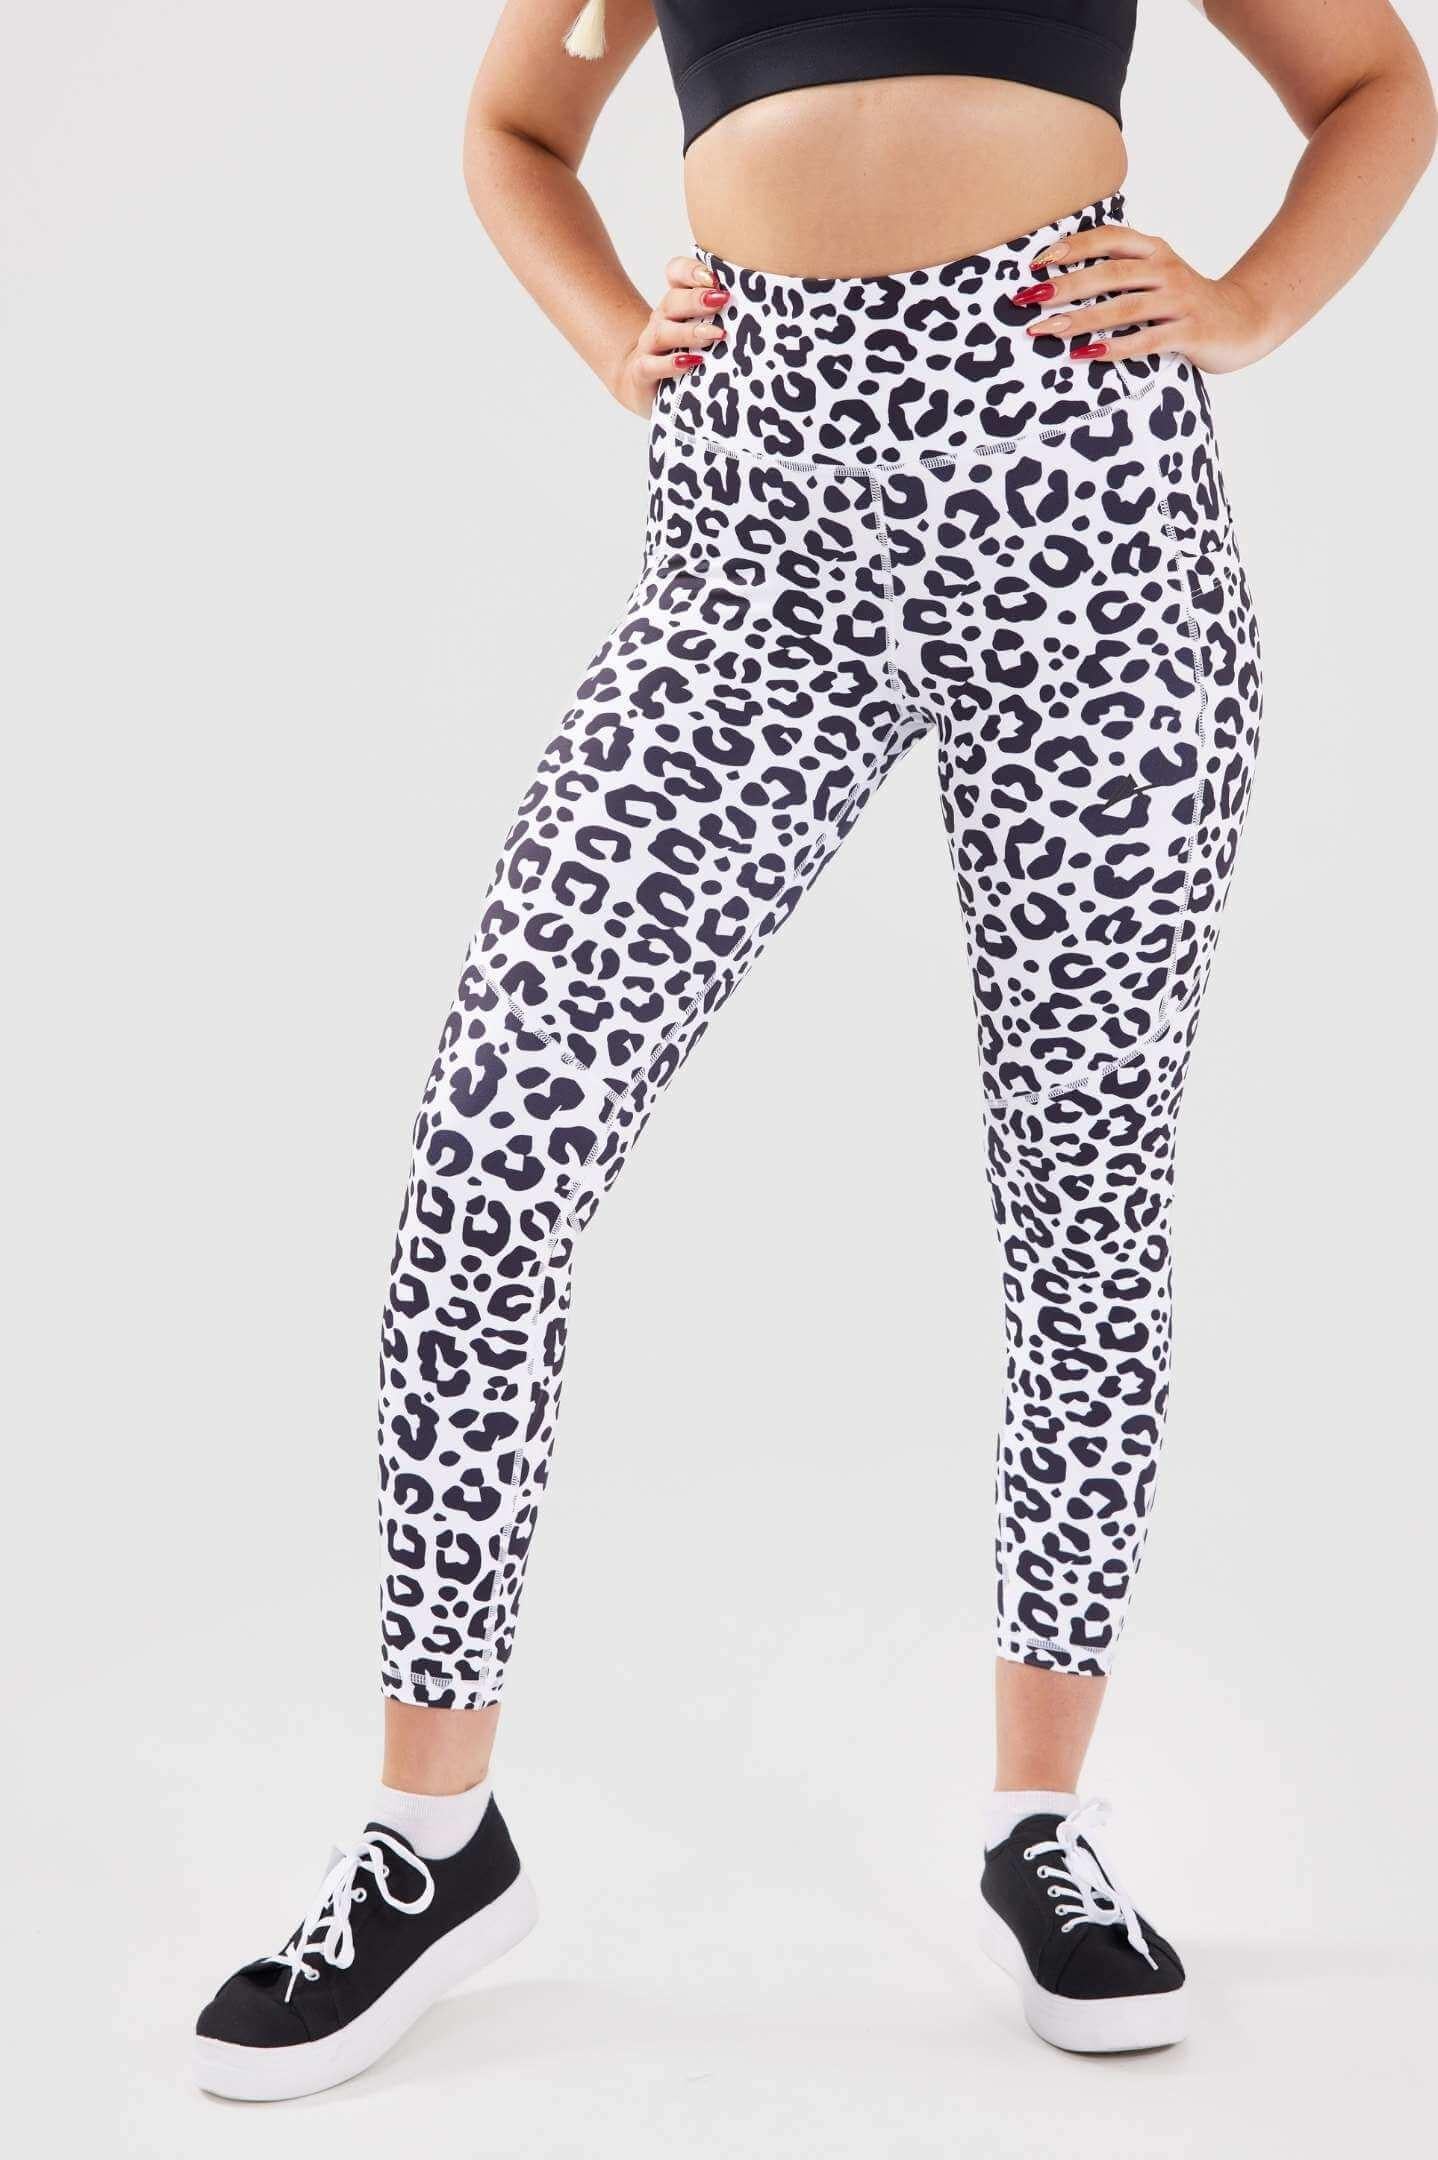 Luxe Scrunch Bum Pocket Leggings - Leopard Print